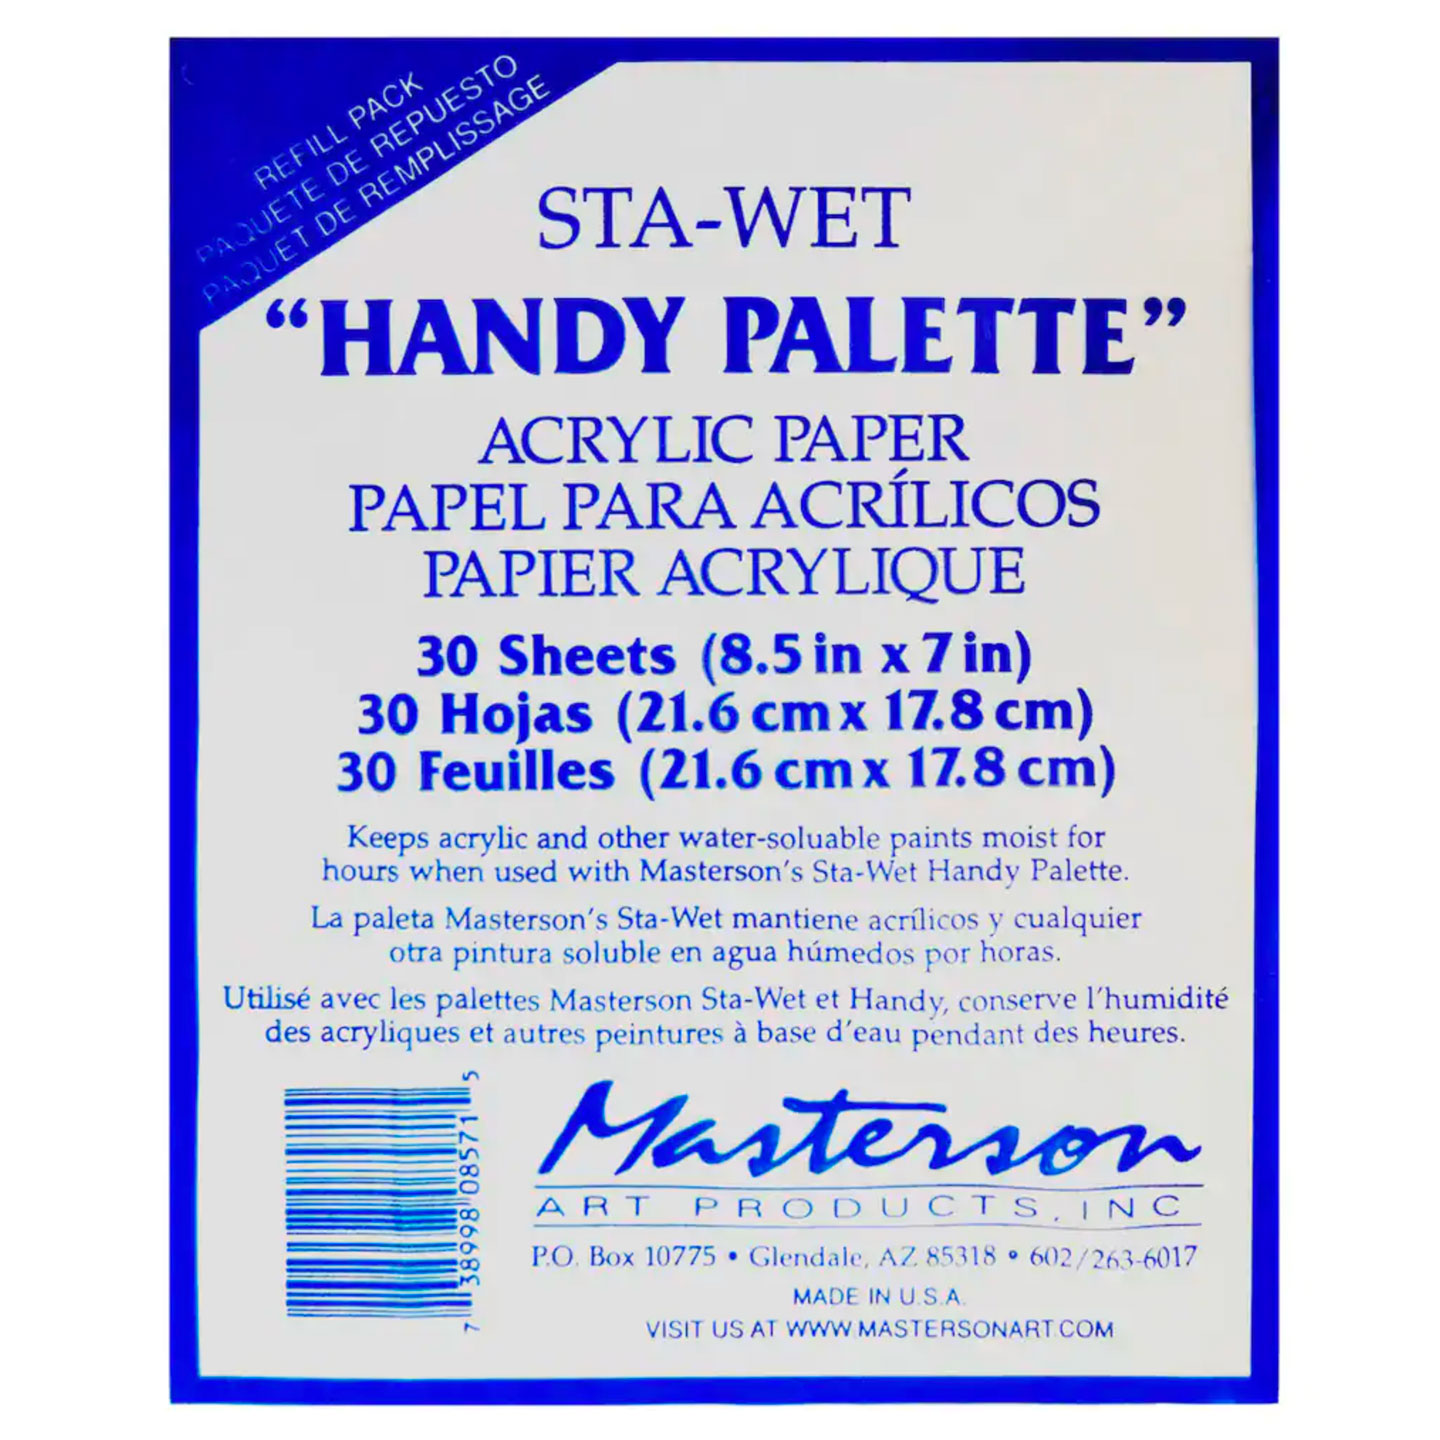 Masterson - Sta-Wet Handy Palette